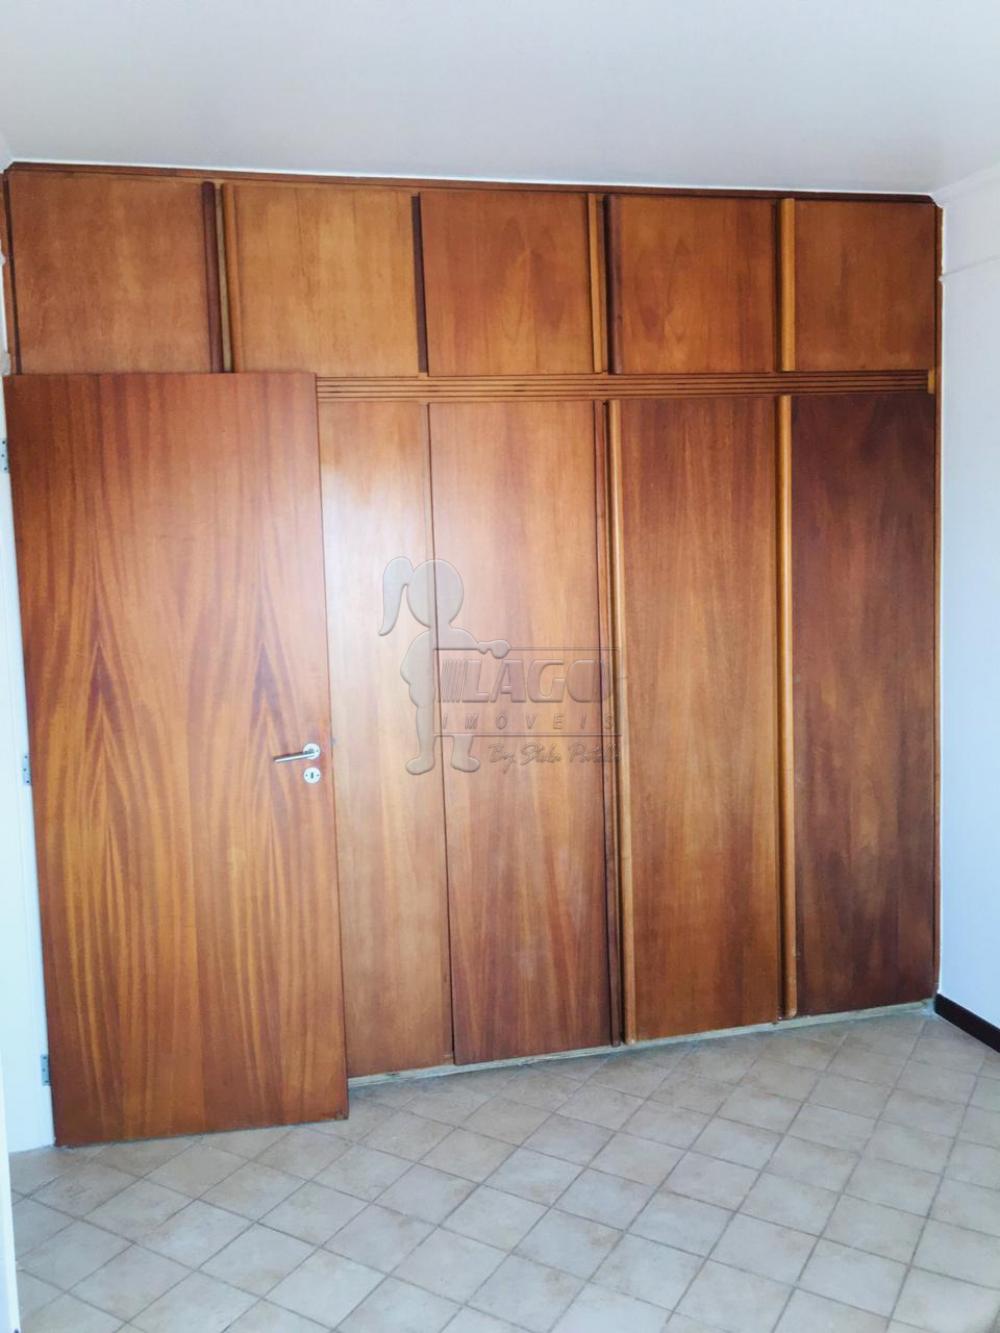 Alugar Apartamentos / Padrão em Ribeirão Preto R$ 1.000,00 - Foto 13